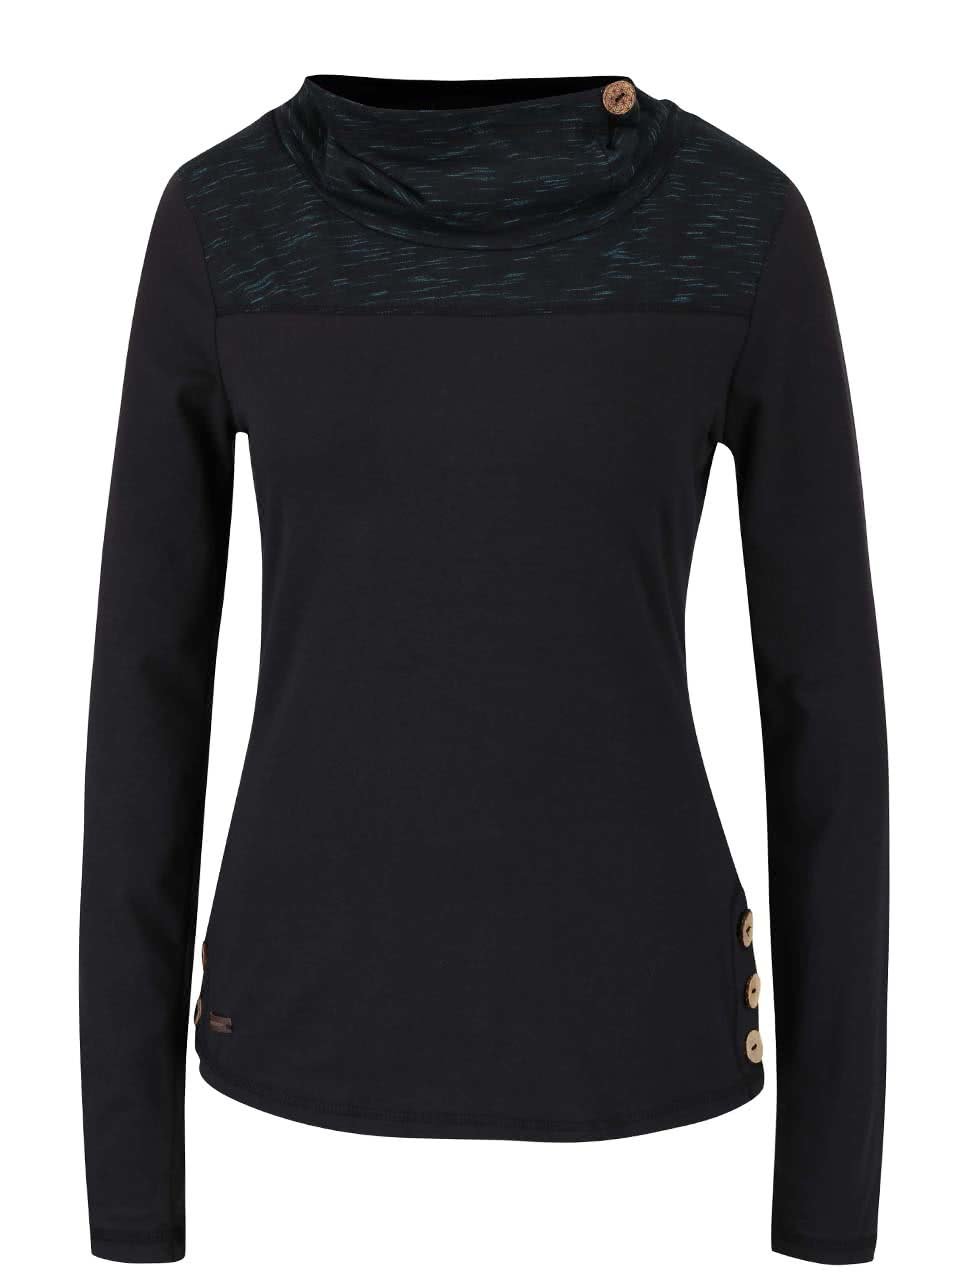 Tyrkysovo-černé dámské tričko s límcem a dlouhým rukávem Ragwear Willow